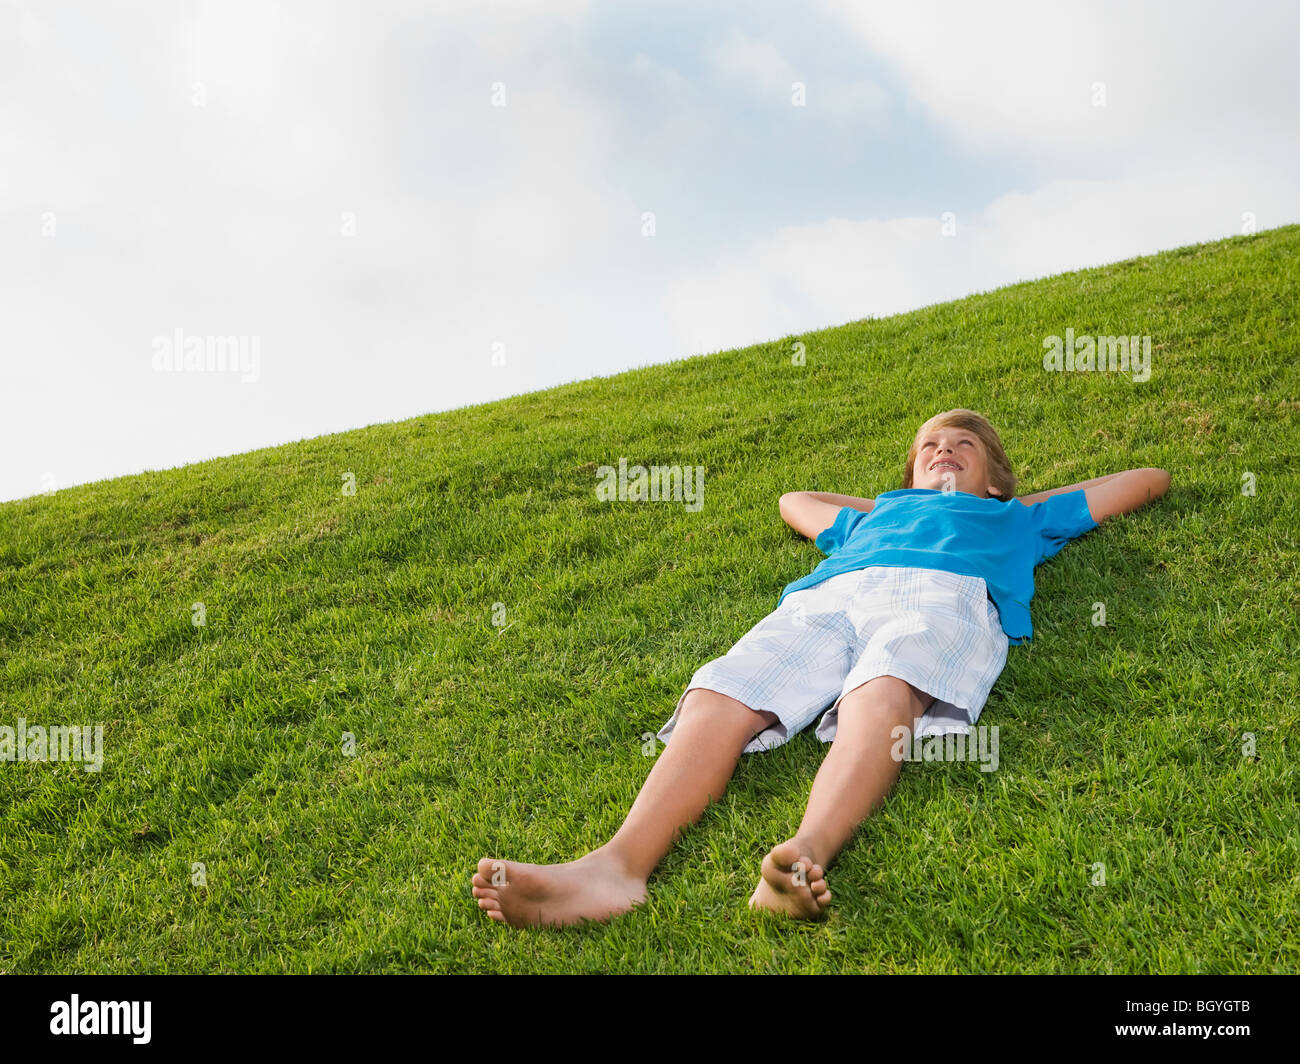 Junge ruht auf dem Rasen Stockfoto